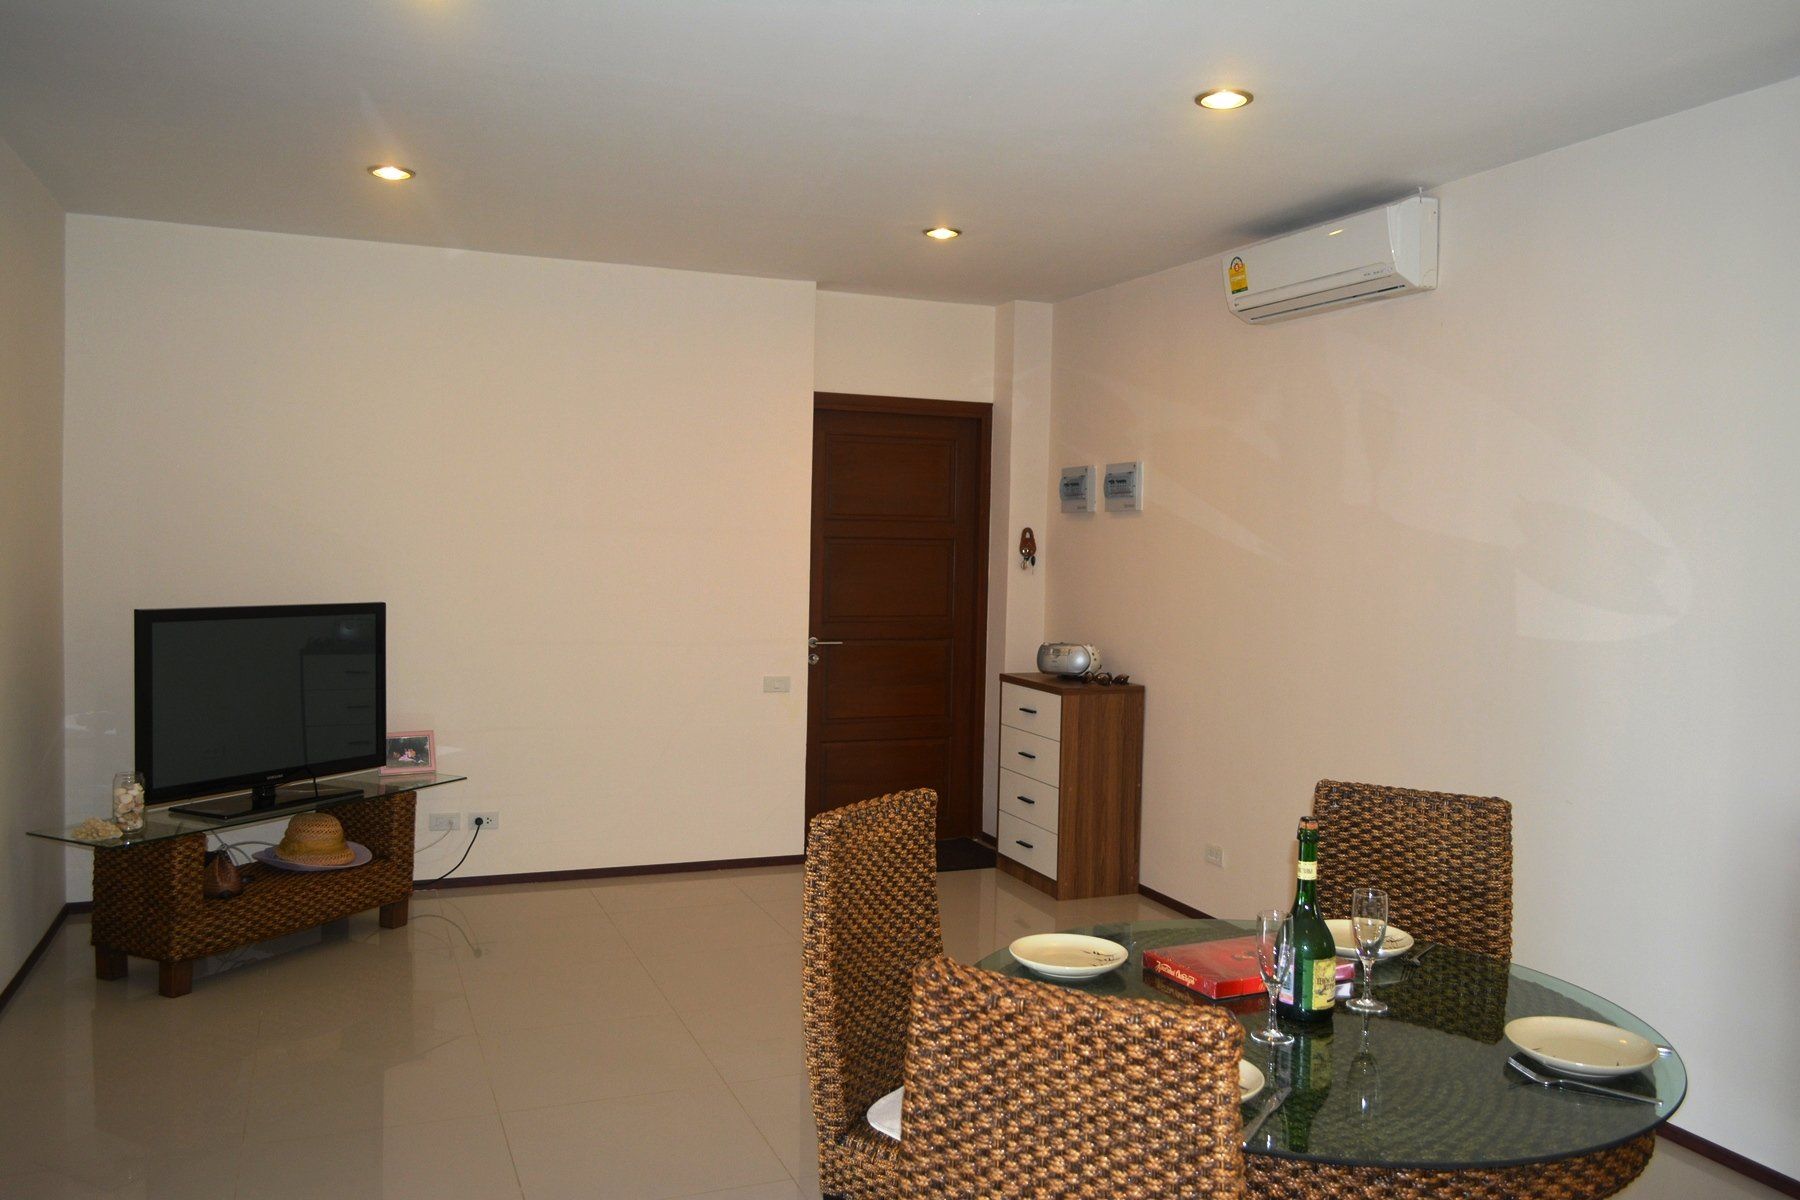 Two-bedroom apartment in Avanta Estates condominium for sale